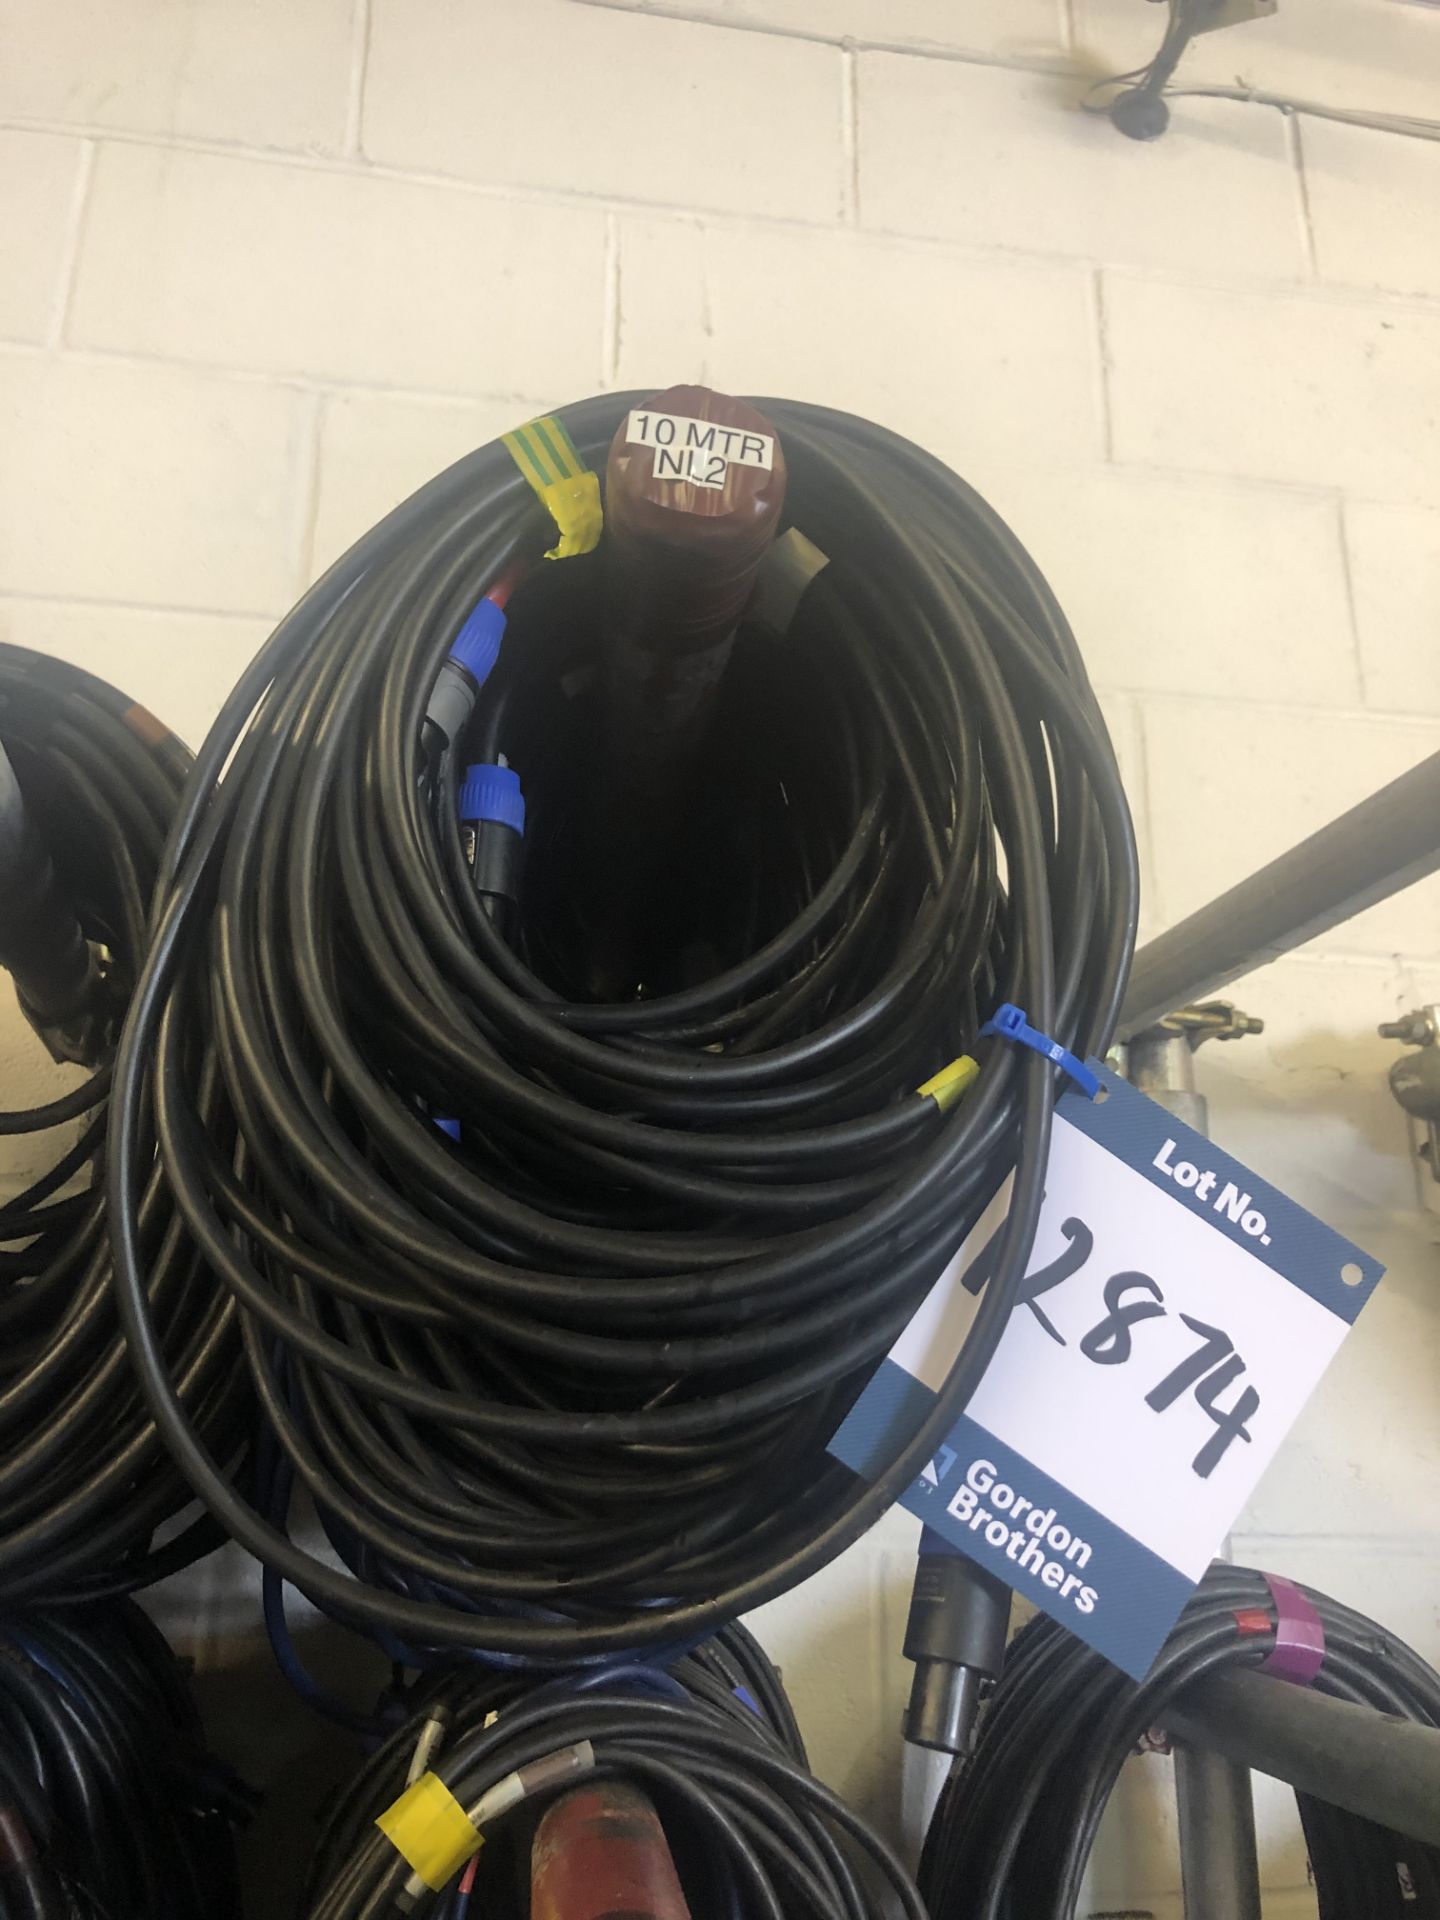 19x No. 10m NL2 cables